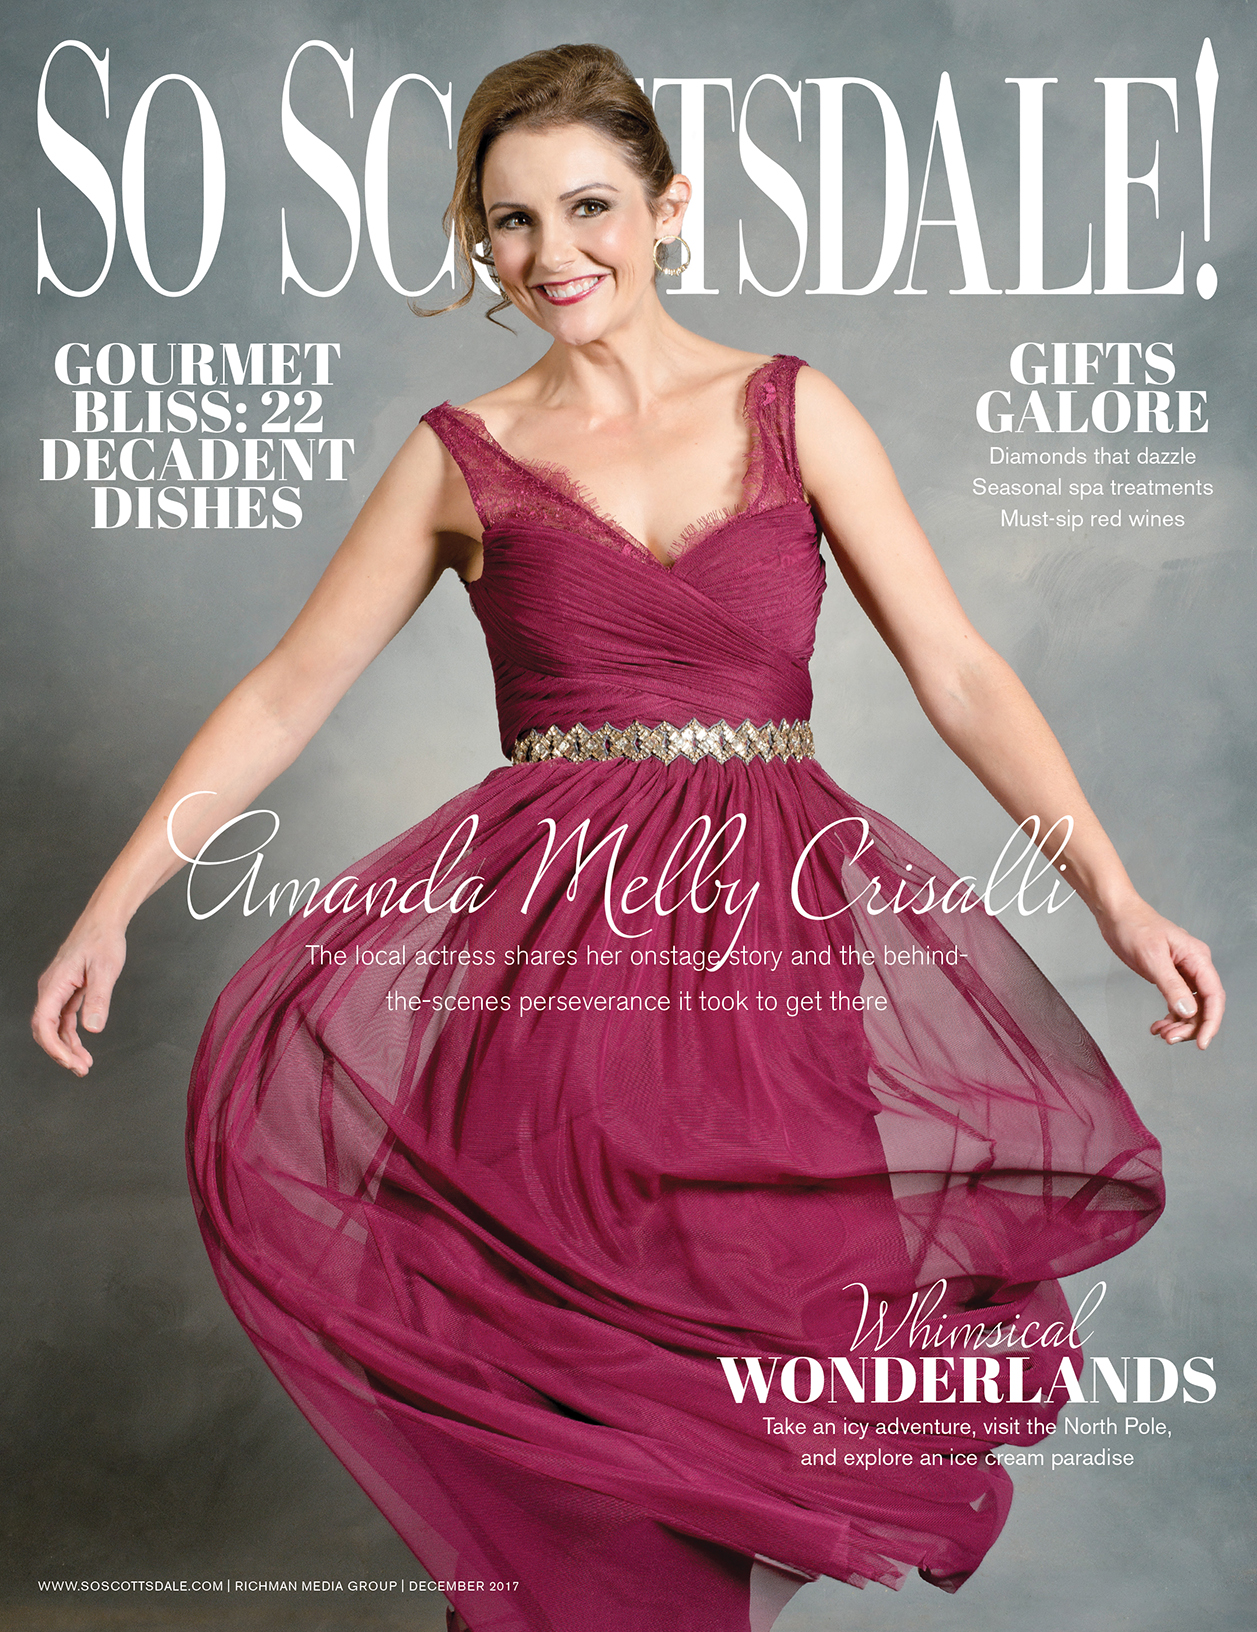 Magazine — So Scottsdale